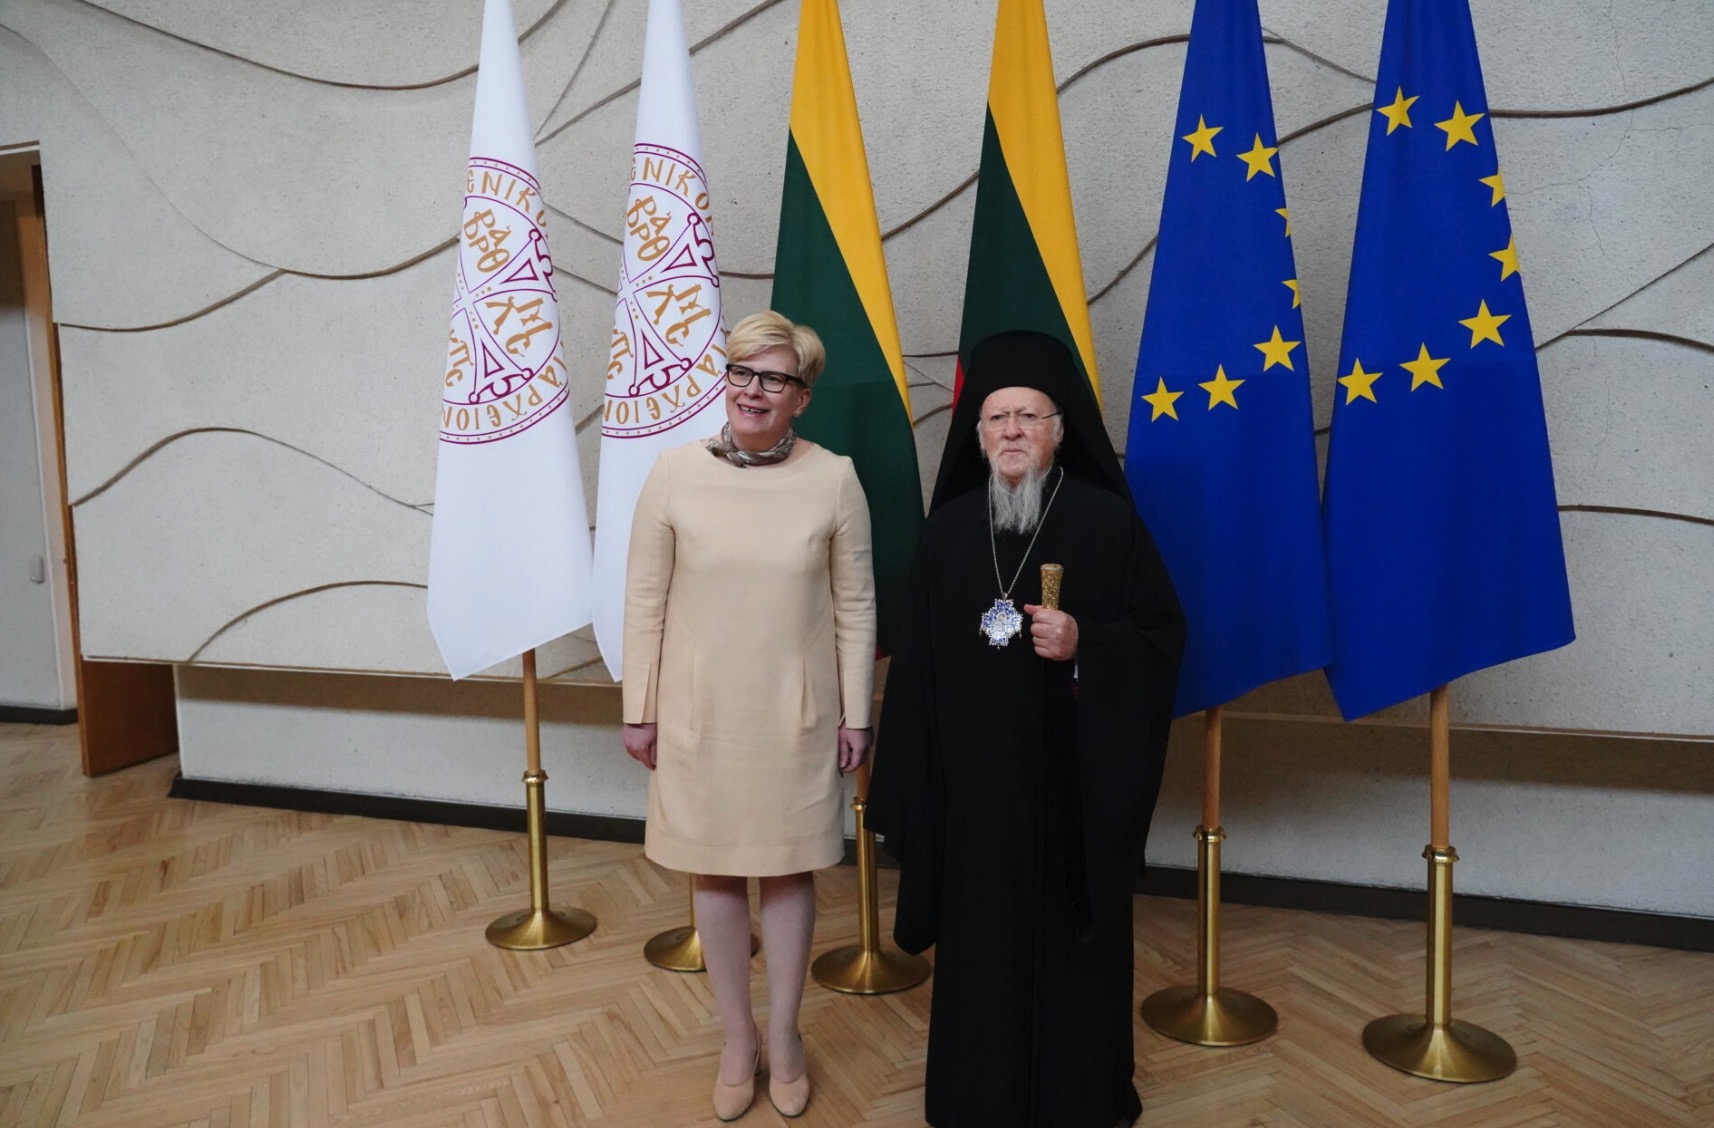 Le patriarche de constantinople s’est rendu en lituanie